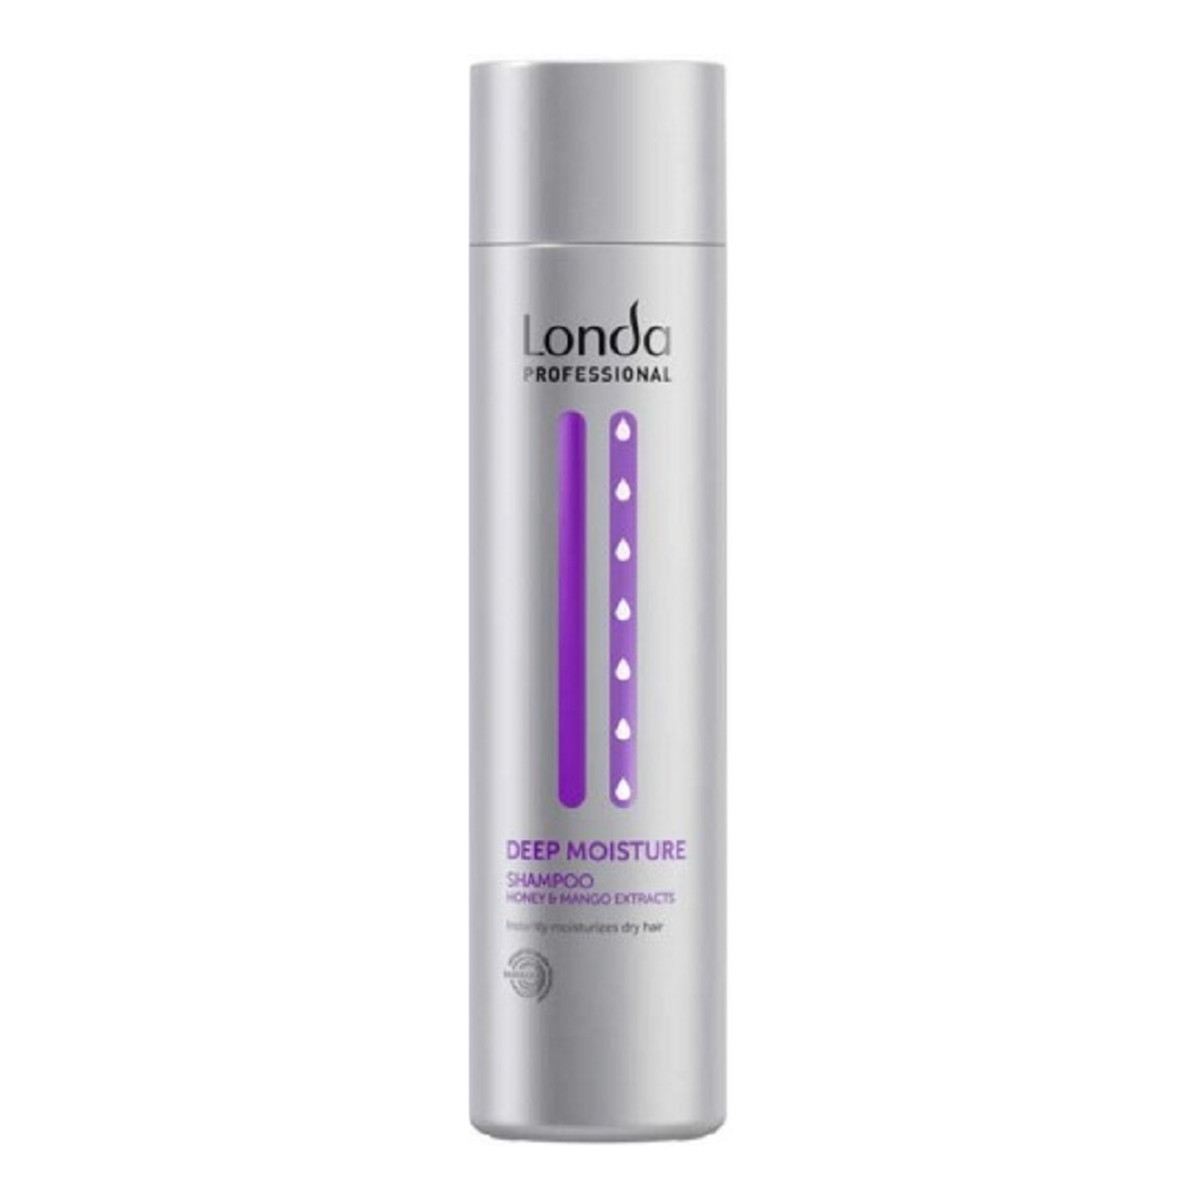 Londa Professional Professional Deep moisture nawilżający szampon do włosów 250ml